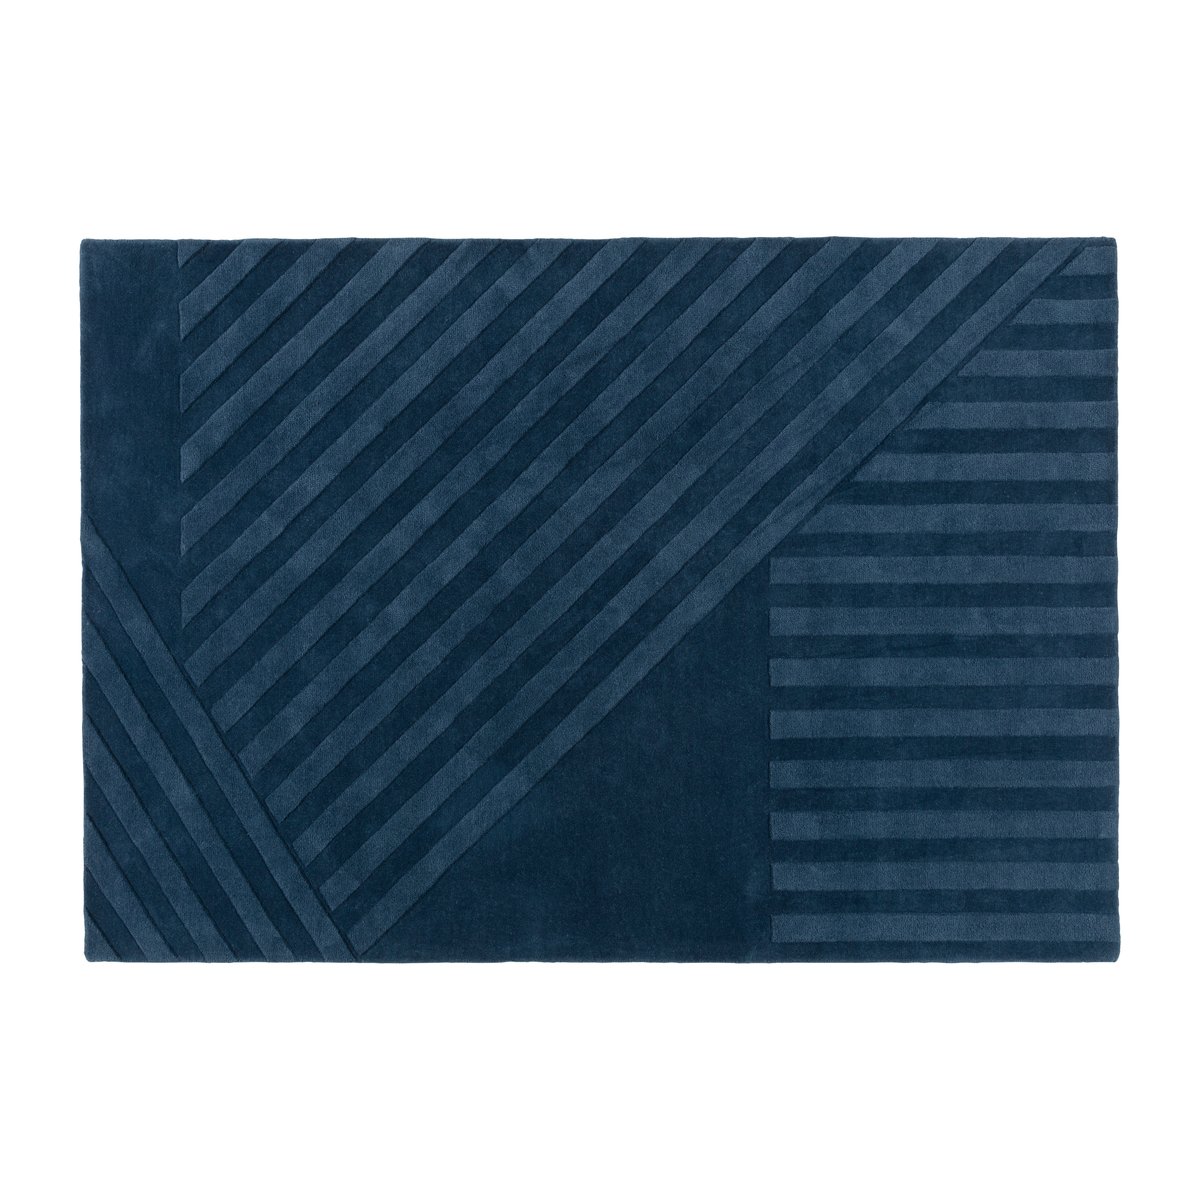 NJRD Levels uldtæppe stripes blå 200×300 cm